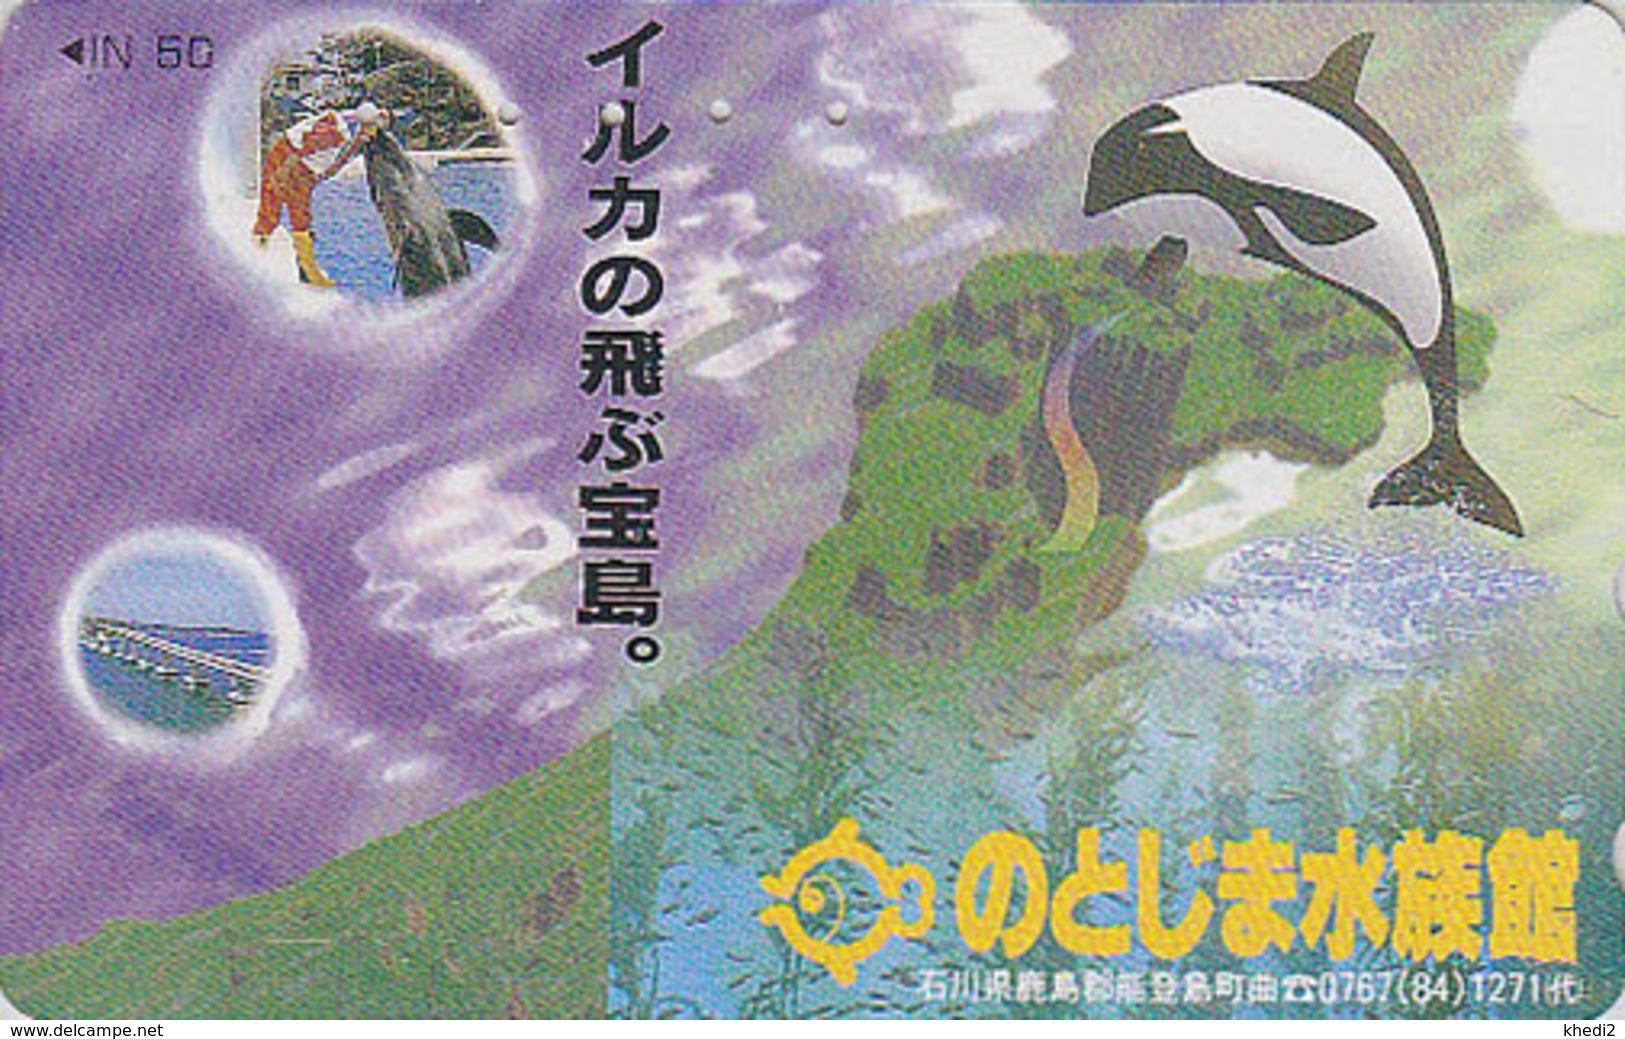 Télécarte Japon / 110-011 - ANIMAL - BALEINE ORQUE / Série Dressage 1 - ORCA WHALE  Japan Phonecard - 332 - Delphine